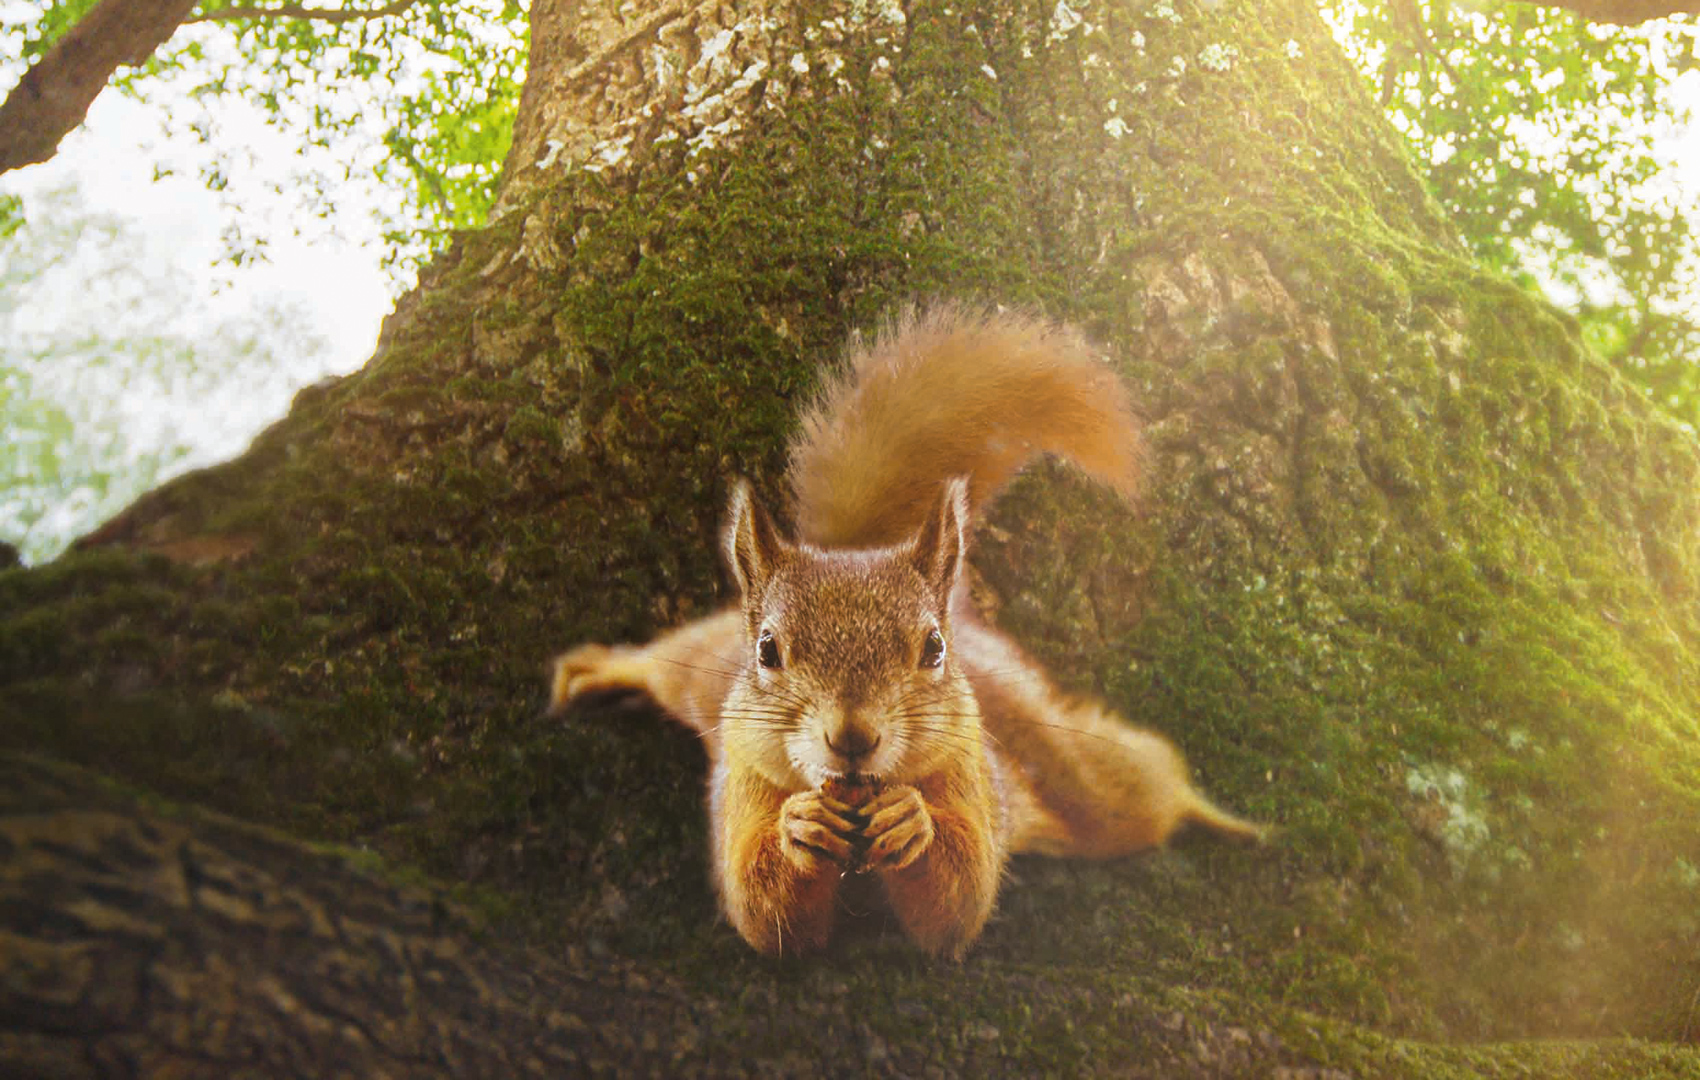 Ein Eichhörnchen knabbert an einer Nuss. Es sitzt auf einem Baumstamm und schaut direkt in die Kamera.